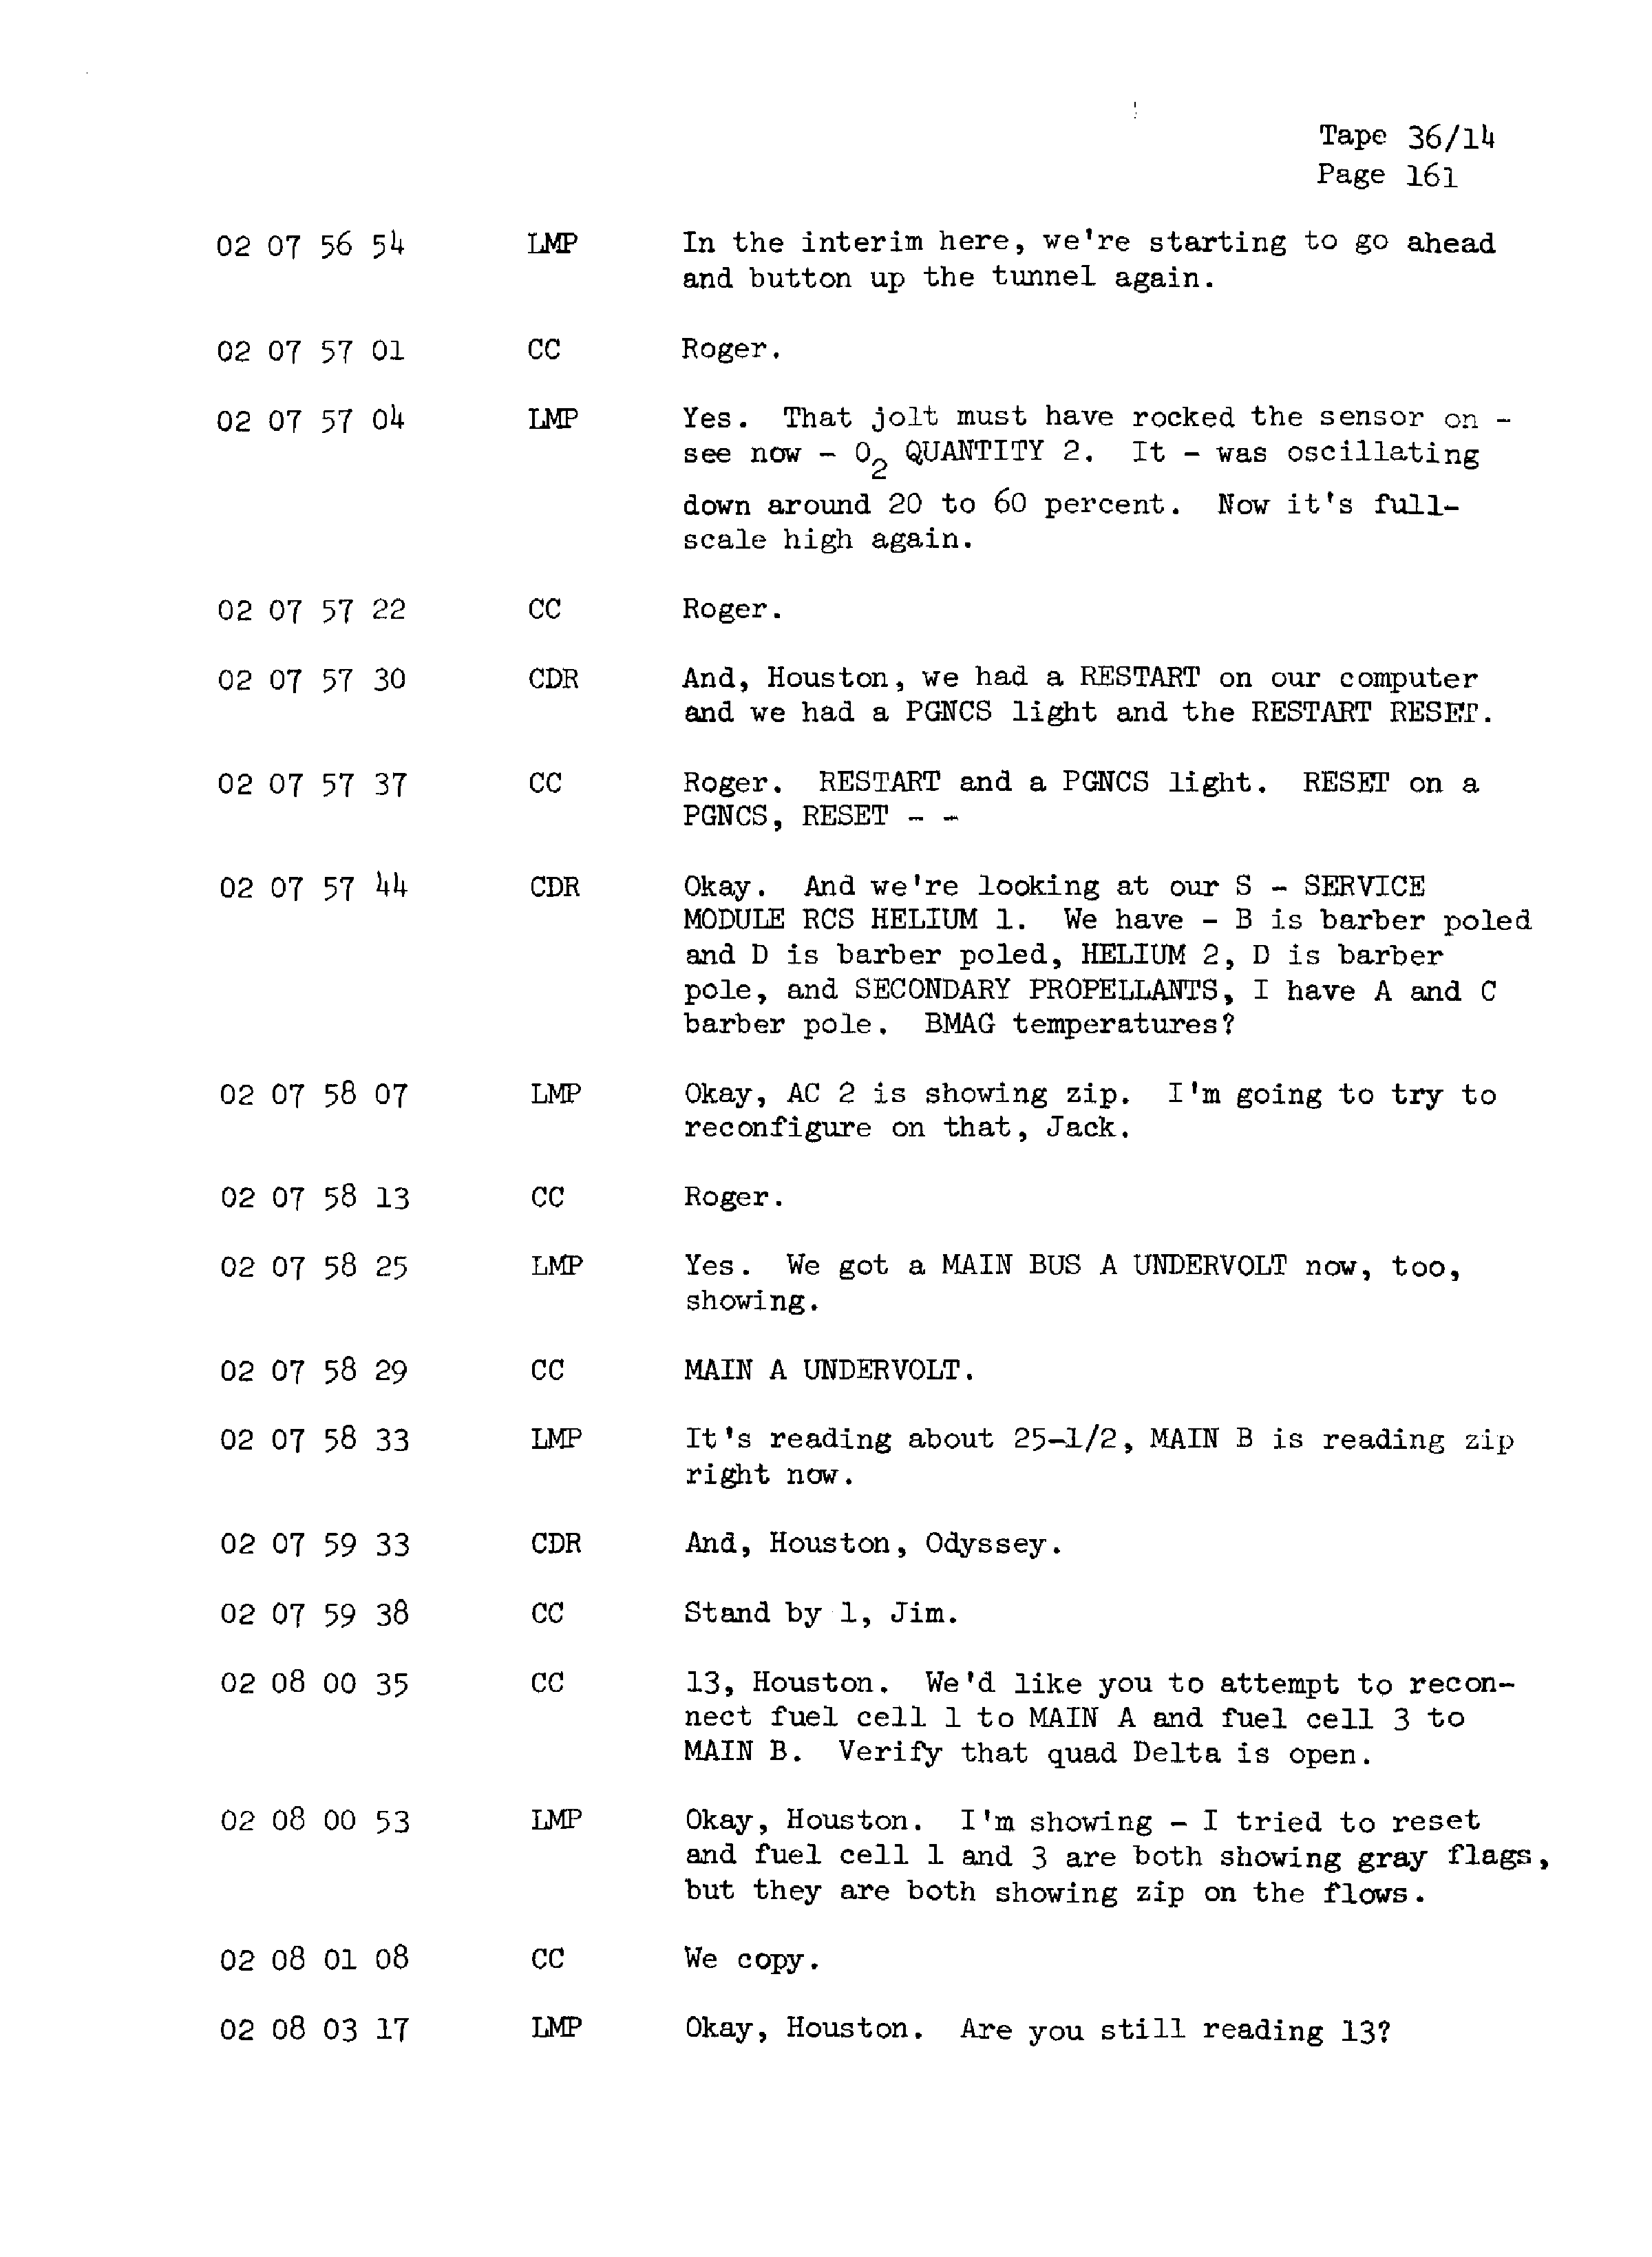 Page 168 of Apollo 13’s original transcript